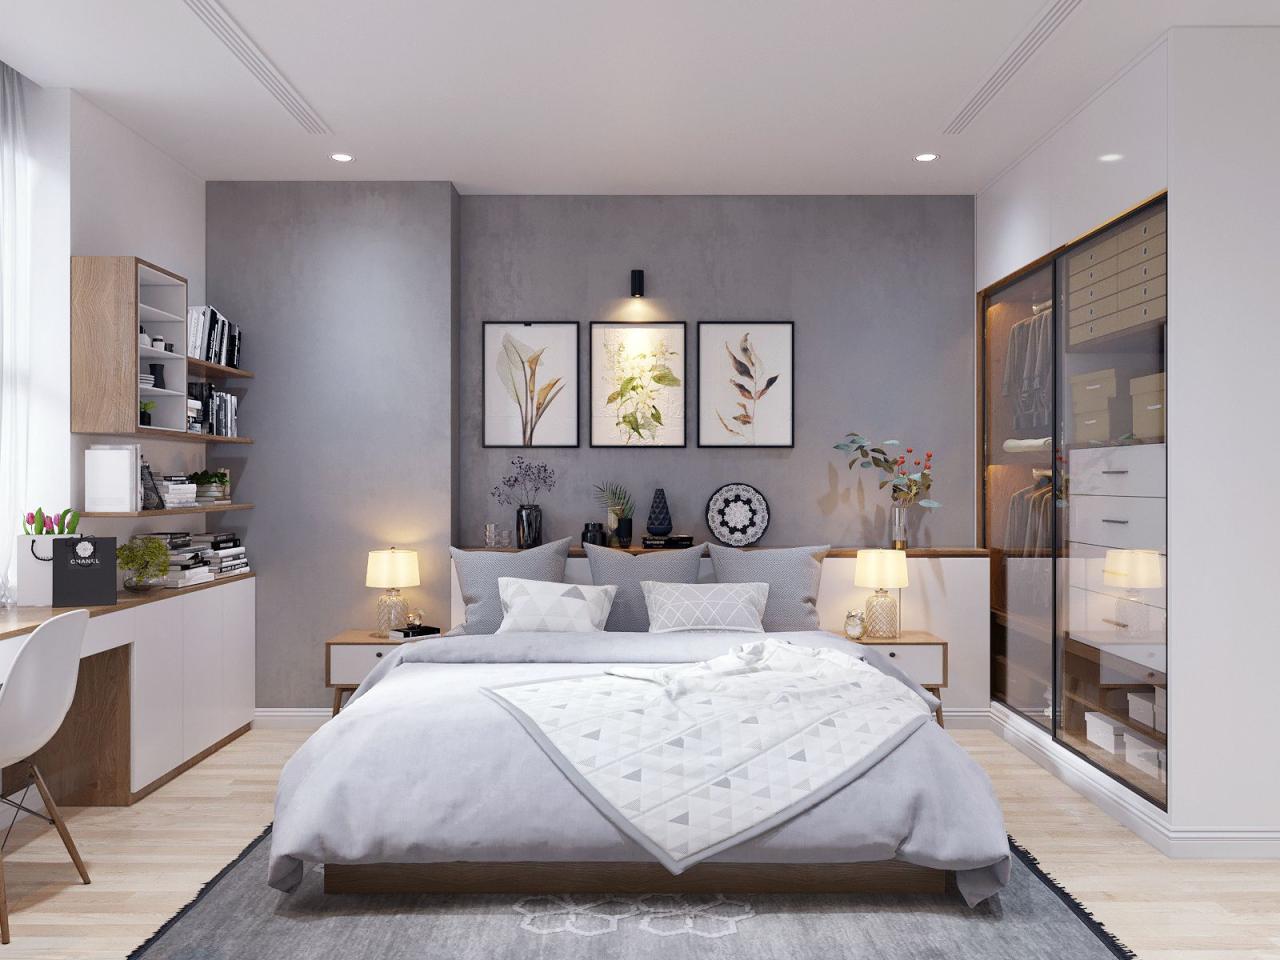 Bedroom scandinavian inspiration bedrooms behance vudu visualizer motion